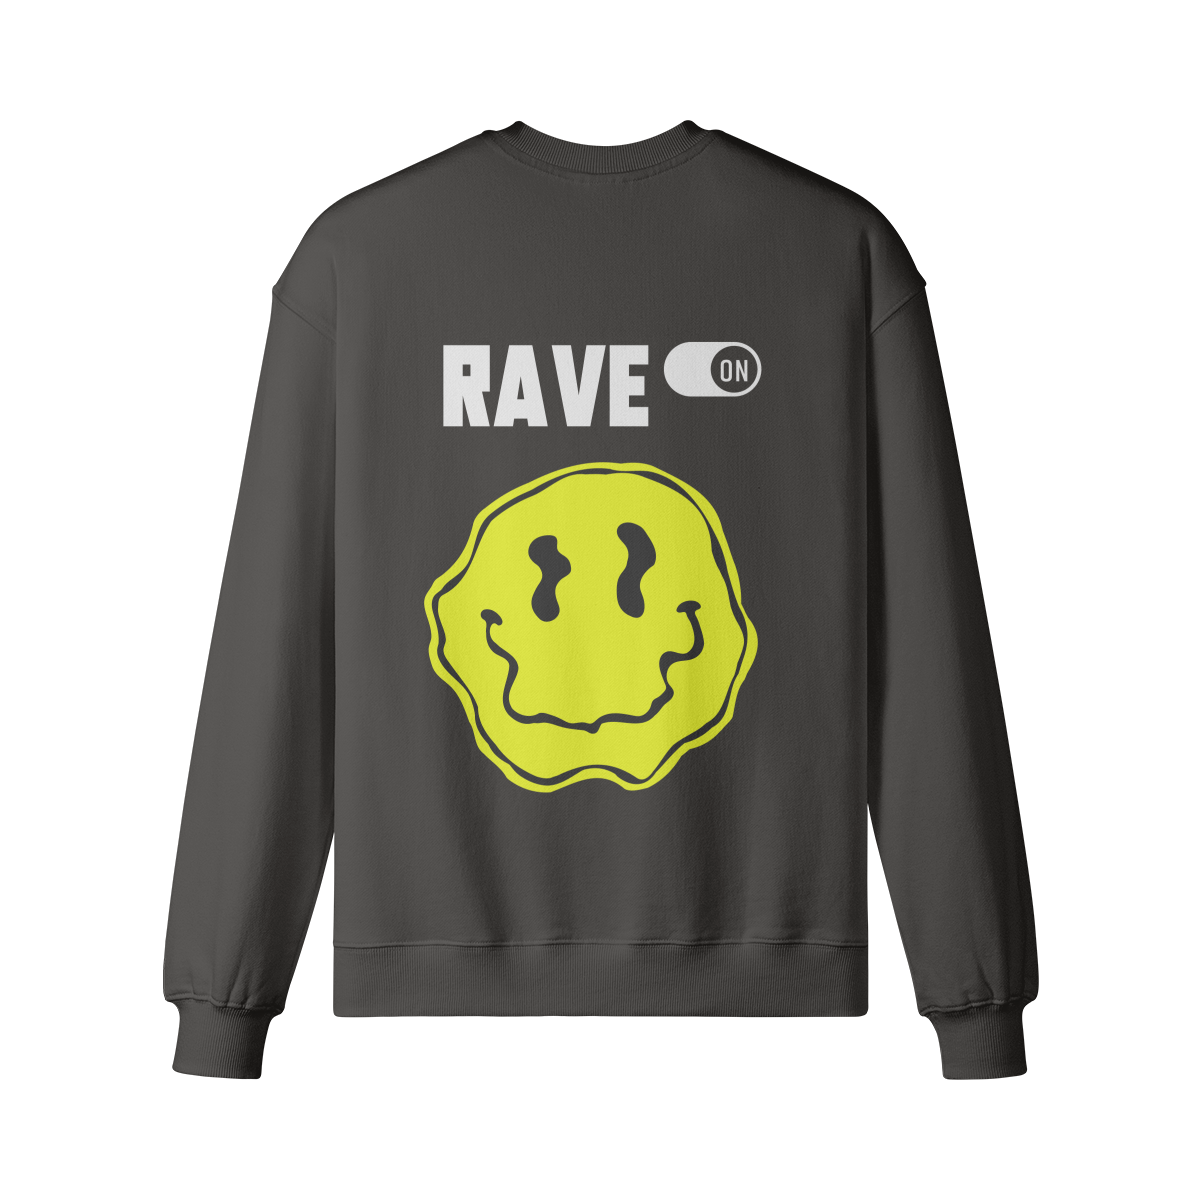 RAVE ON (BACK PRINT) - Unisex Oversized Sweatshirt